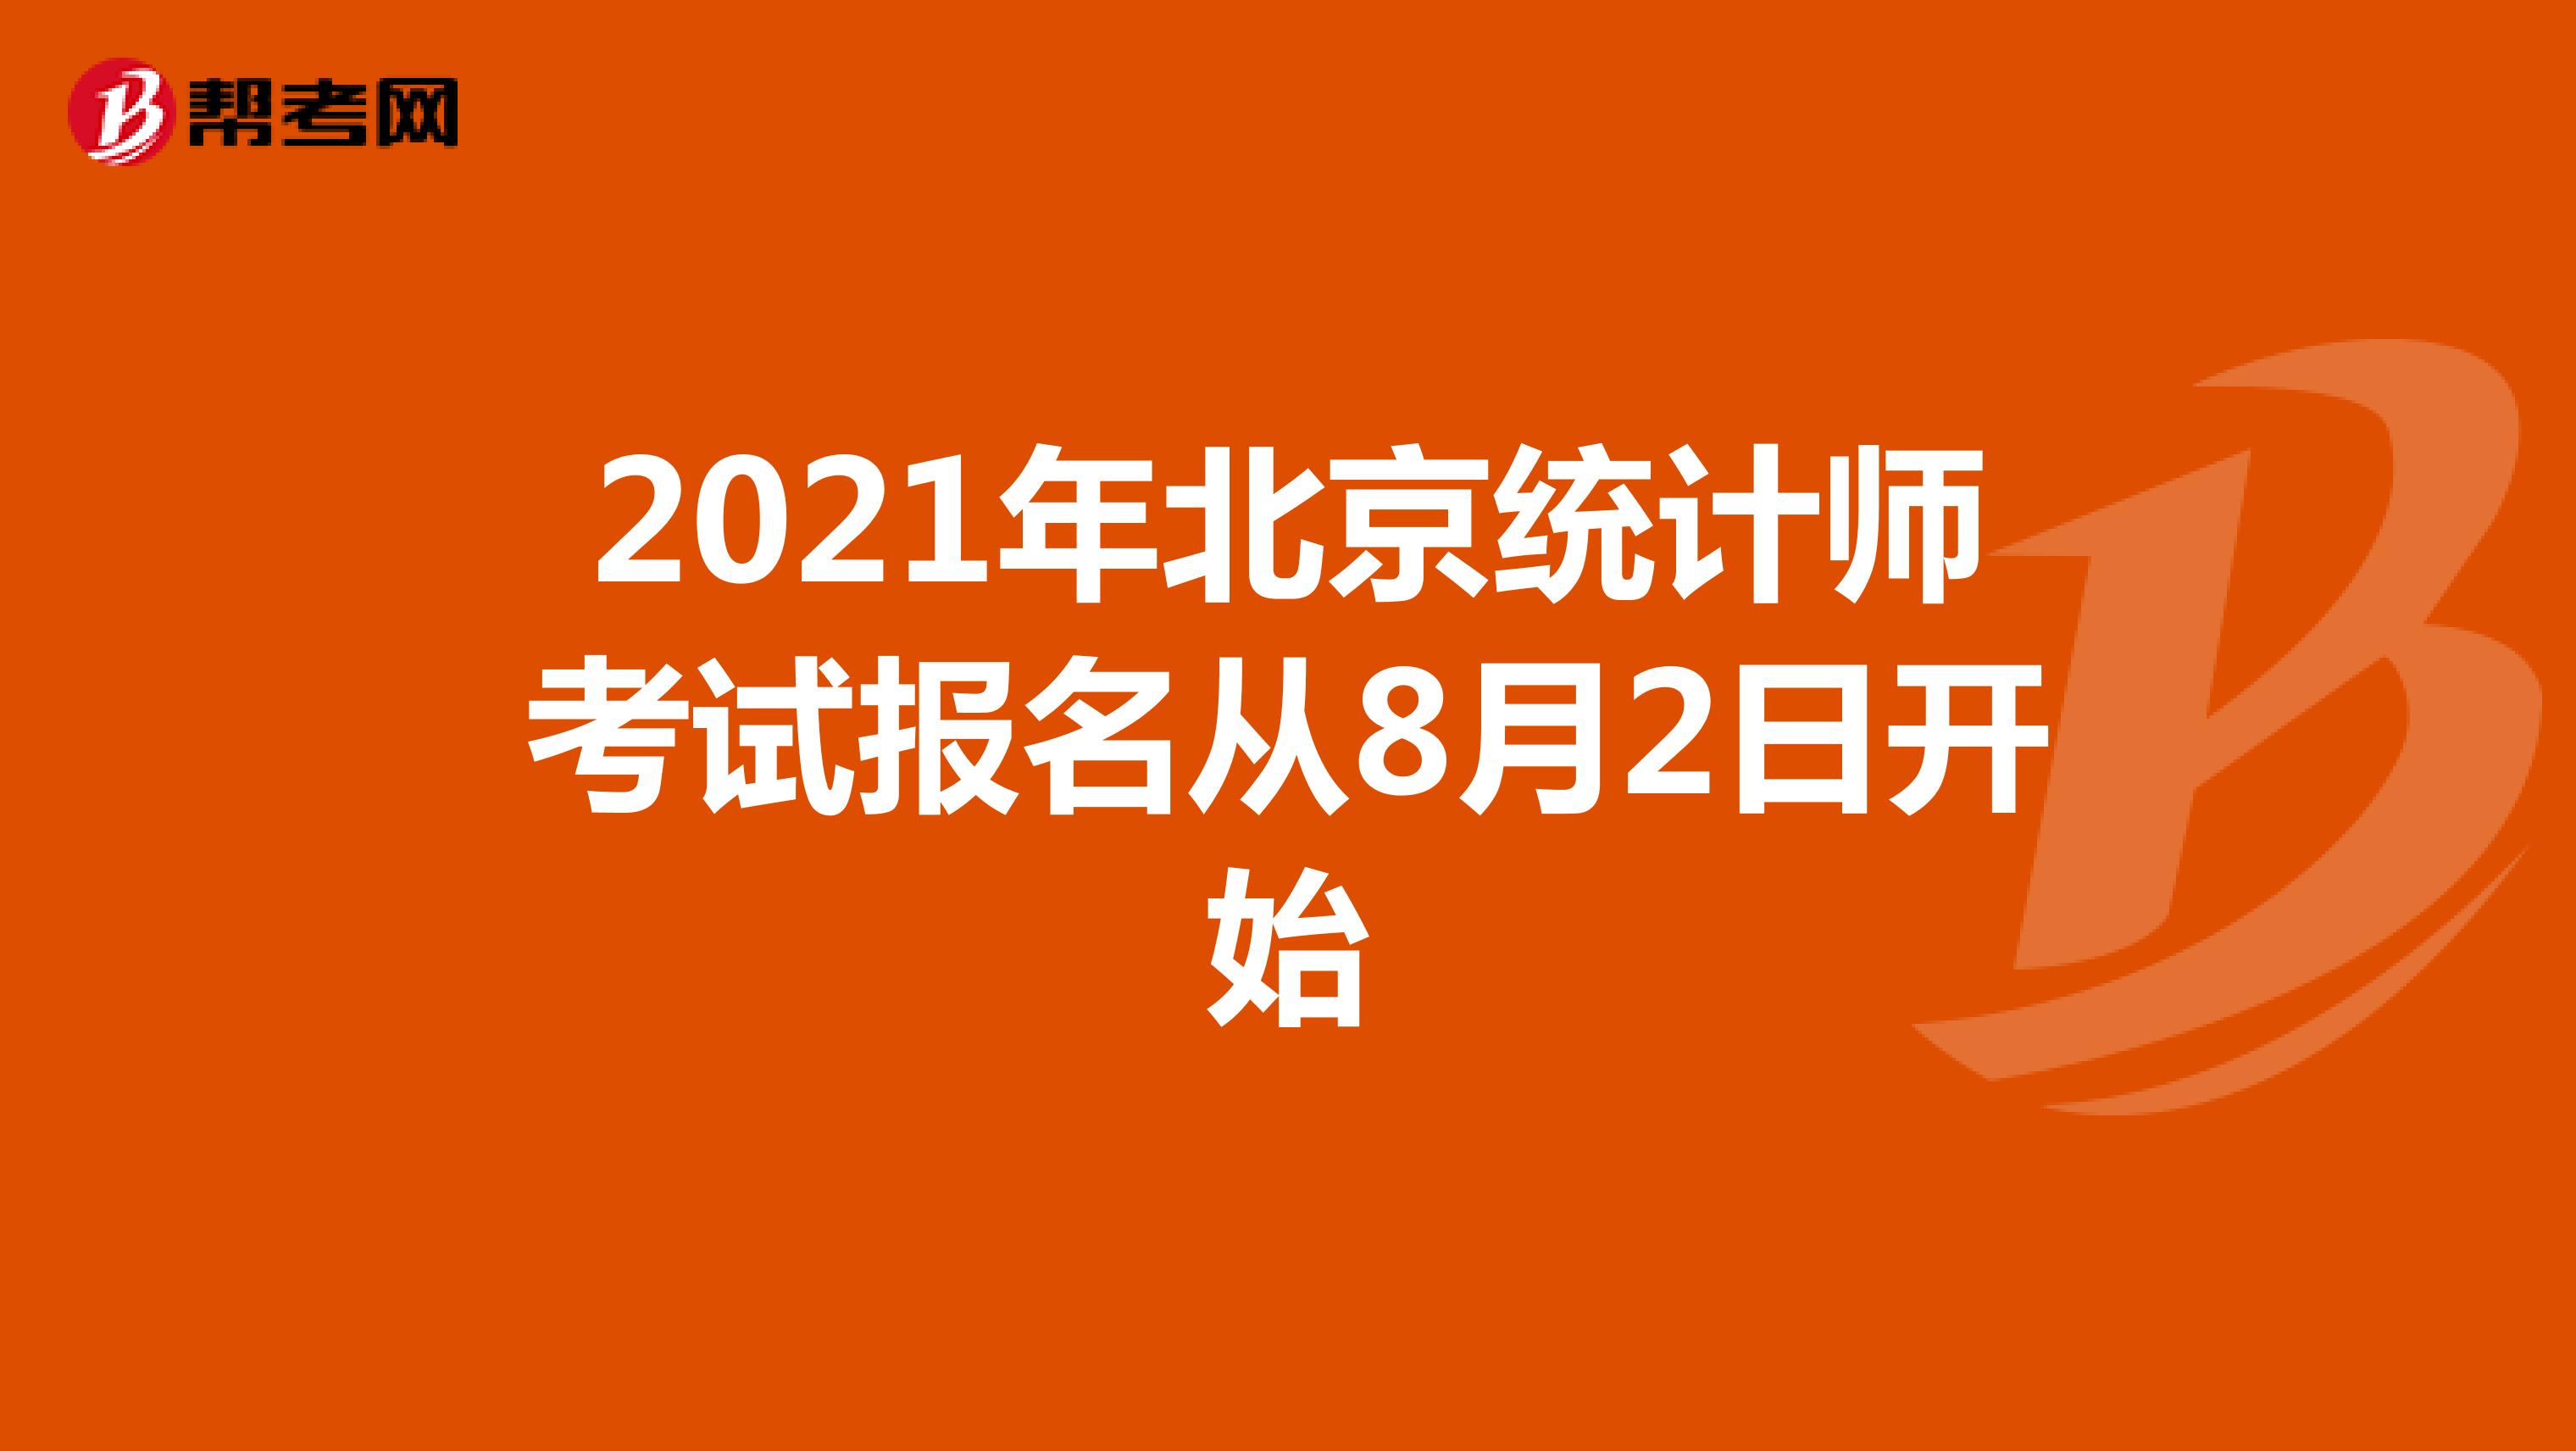 2021年北京统计师考试报名从8月2日开始